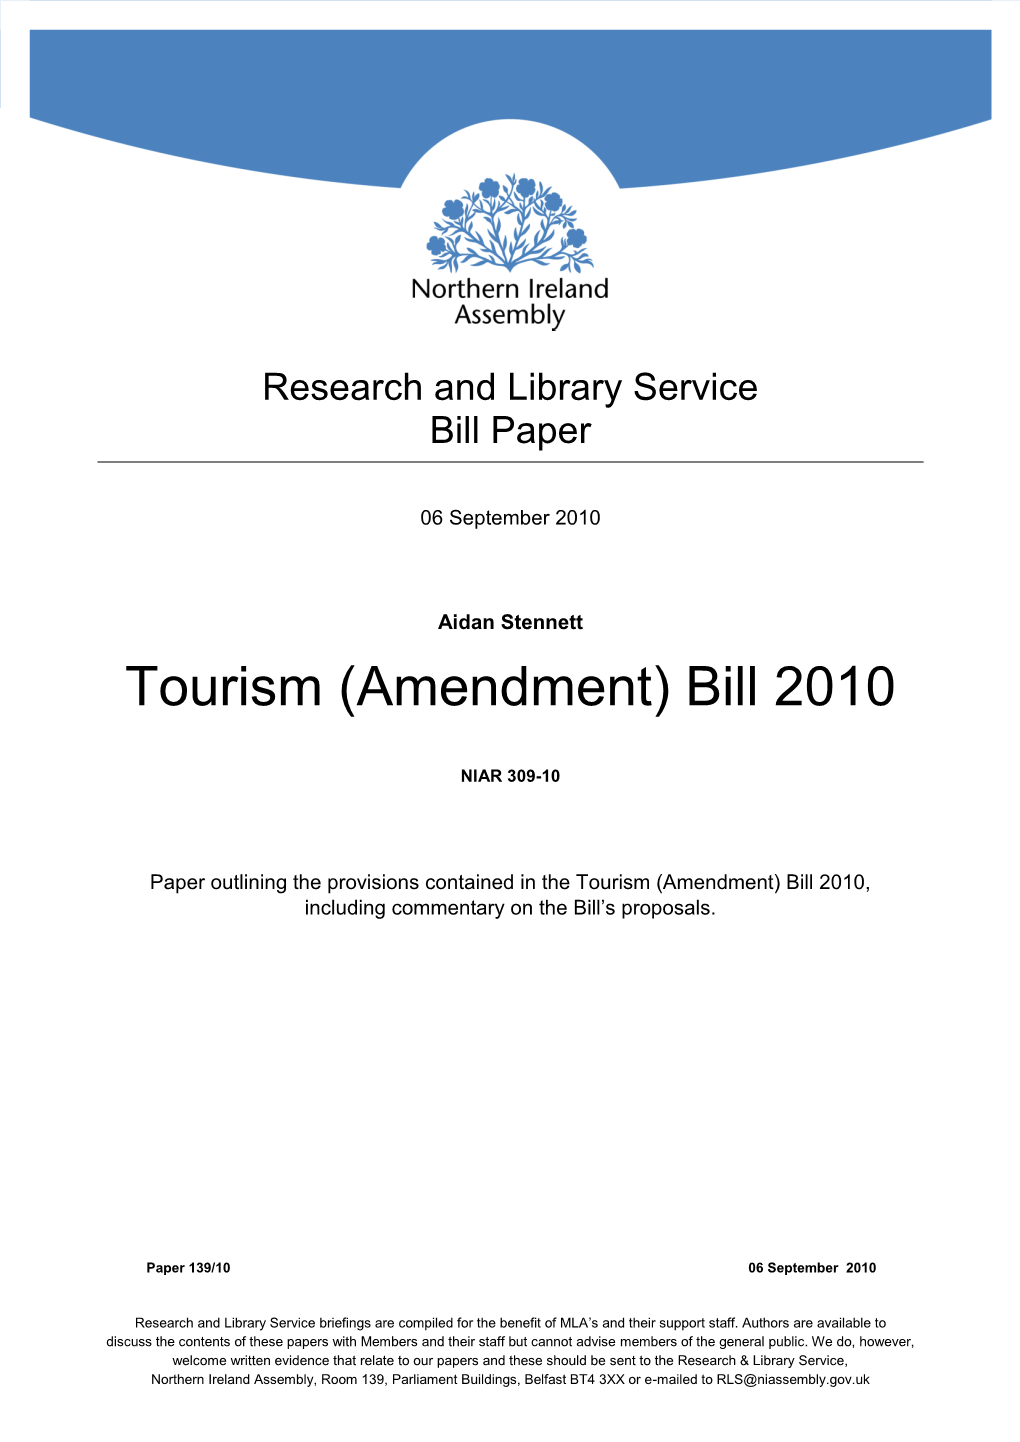 Tourism (Amendment) Bill 2010